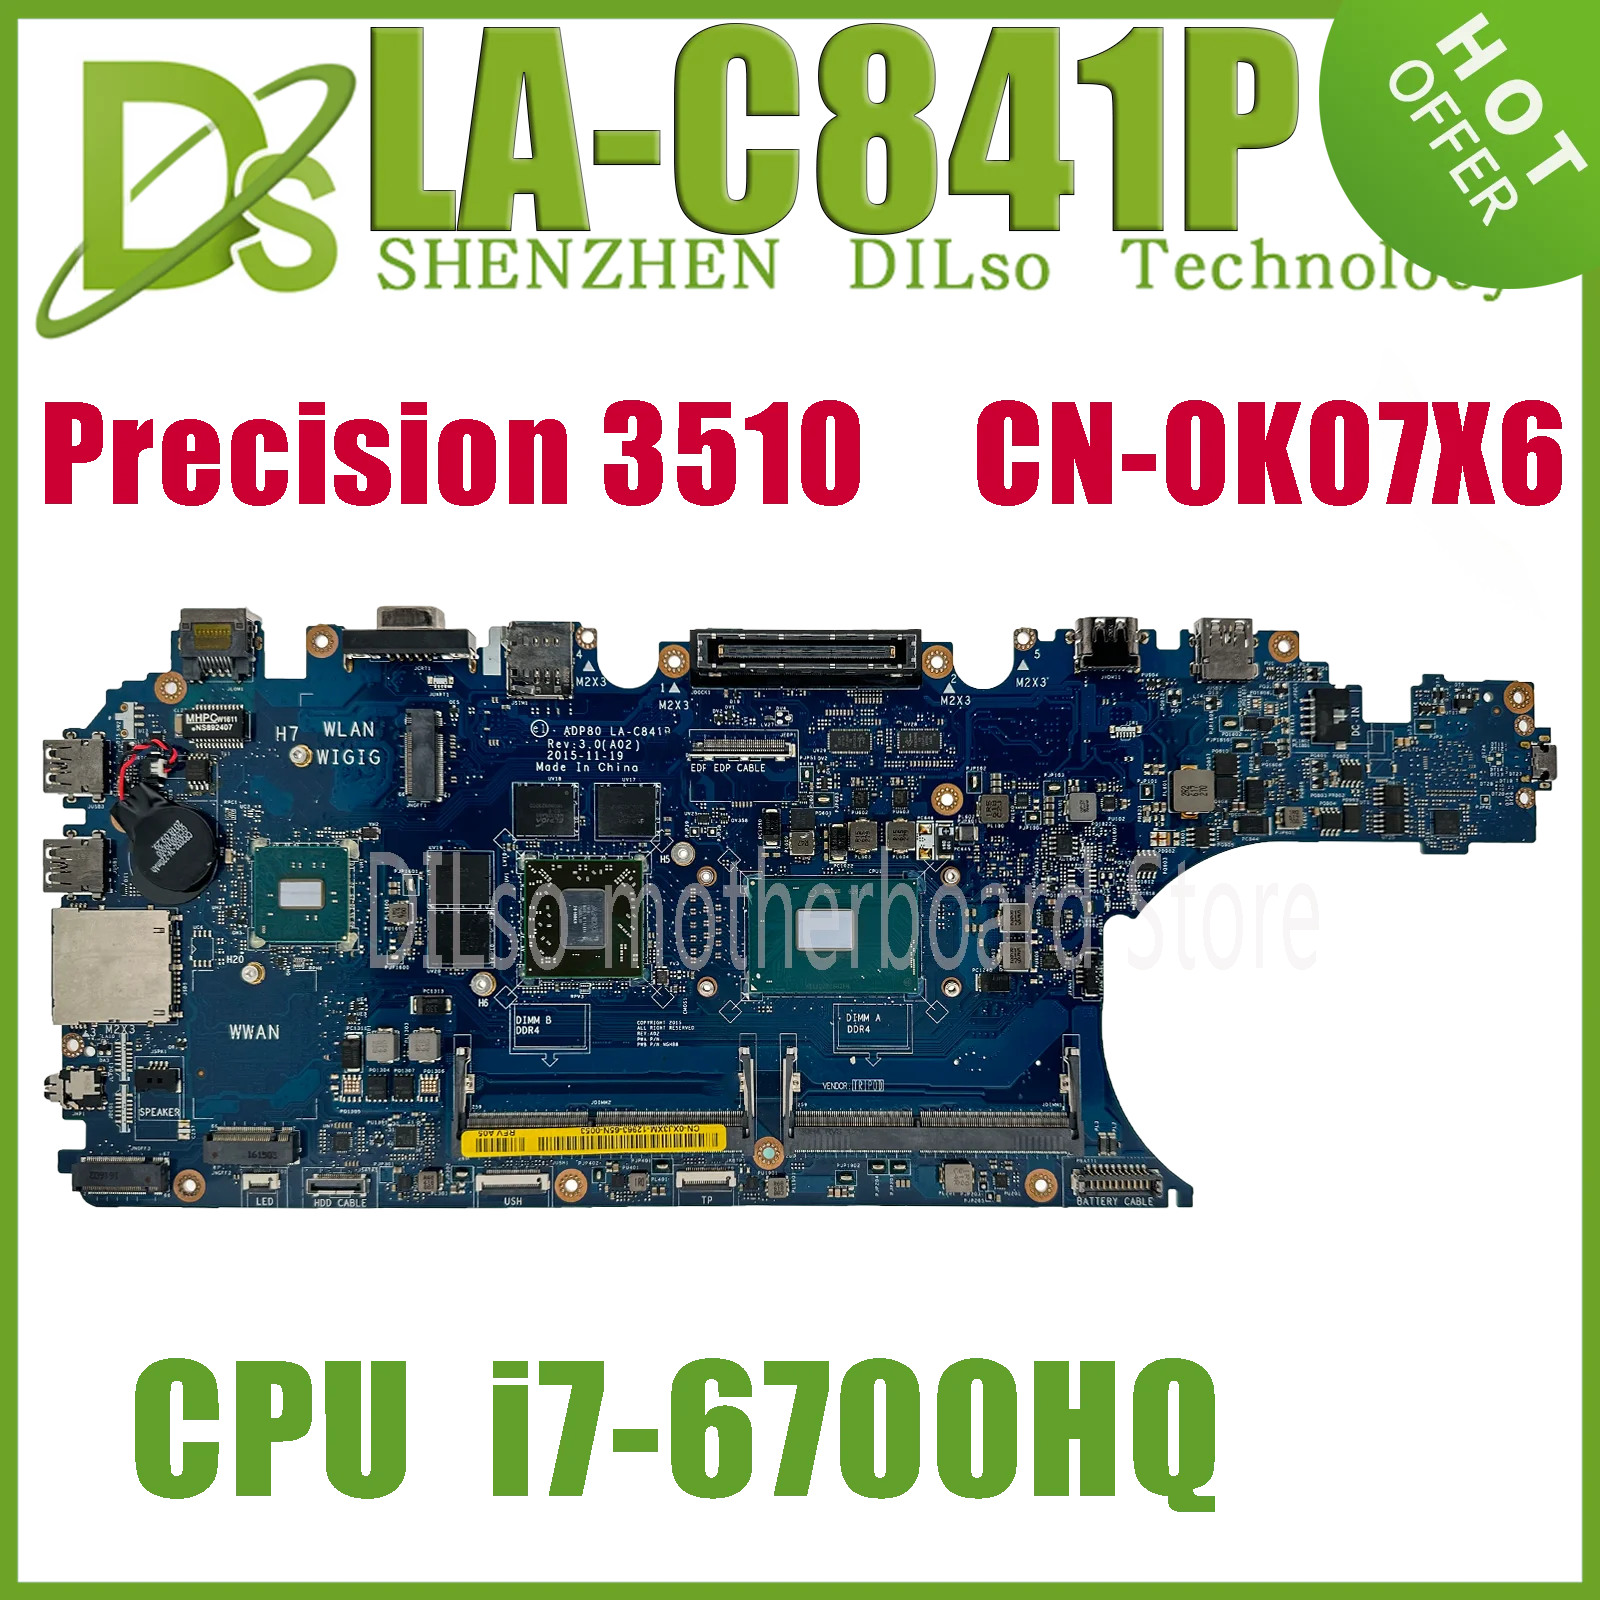 KEFU LA-C841P CN-0XJ3XM CN-0K07X6 Mainboard For Dell Precision 15 3510 Laptop Motherboard CPU i7-6700HQ E3-1505M GPU 286-0086020